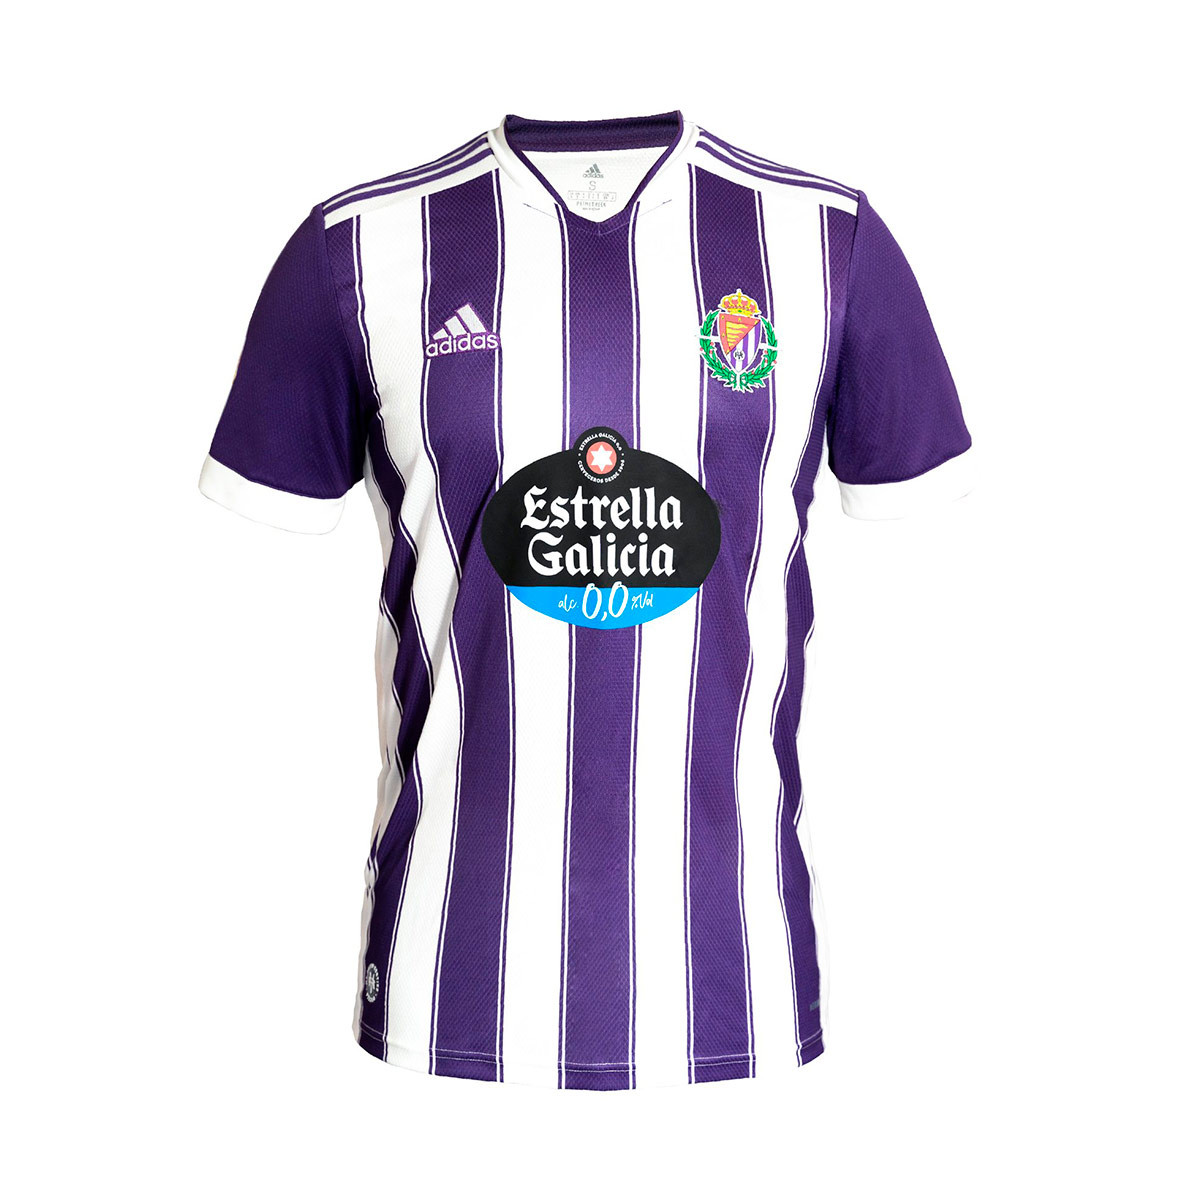 Camiseta adidas Valladolid Club de Fútbol Equipación 2021-2022 Niño Purple-White - Fútbol Emotion